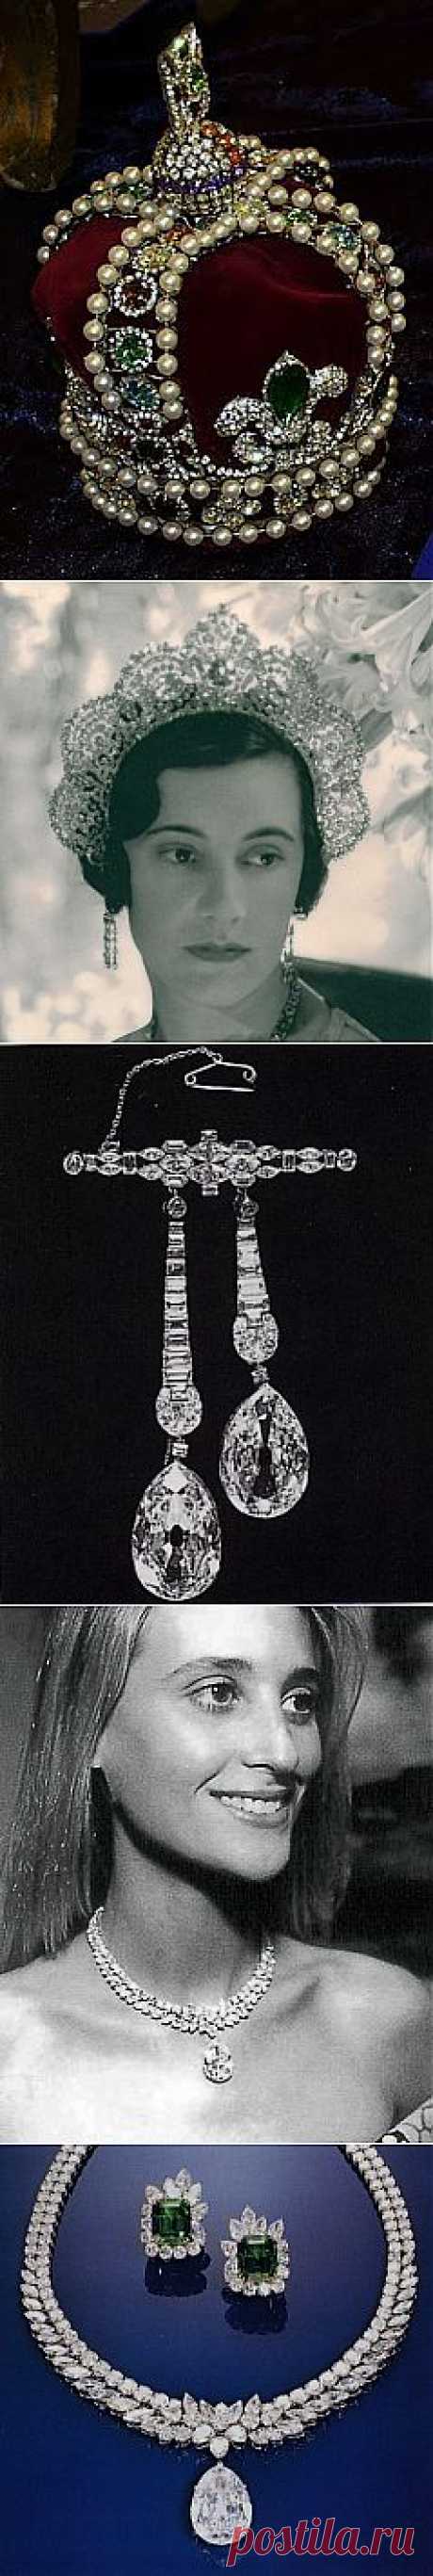 История бриллиантов Аркот.. Алмазы Аркота получили своё название от имени одного из трёх Аркотских набобов, правивших индийским княжеством Карнатик в период 1761-1818 годов. В 1777 году набоб Аркота  (Индия) Азим-уд-Даула подарил королеве Шарлотте, супруге короля Великобритании Георга III, пять бриллиантов, самый большой из которых представлял собой драгоценный камень овальной формы в 38,6 карата.